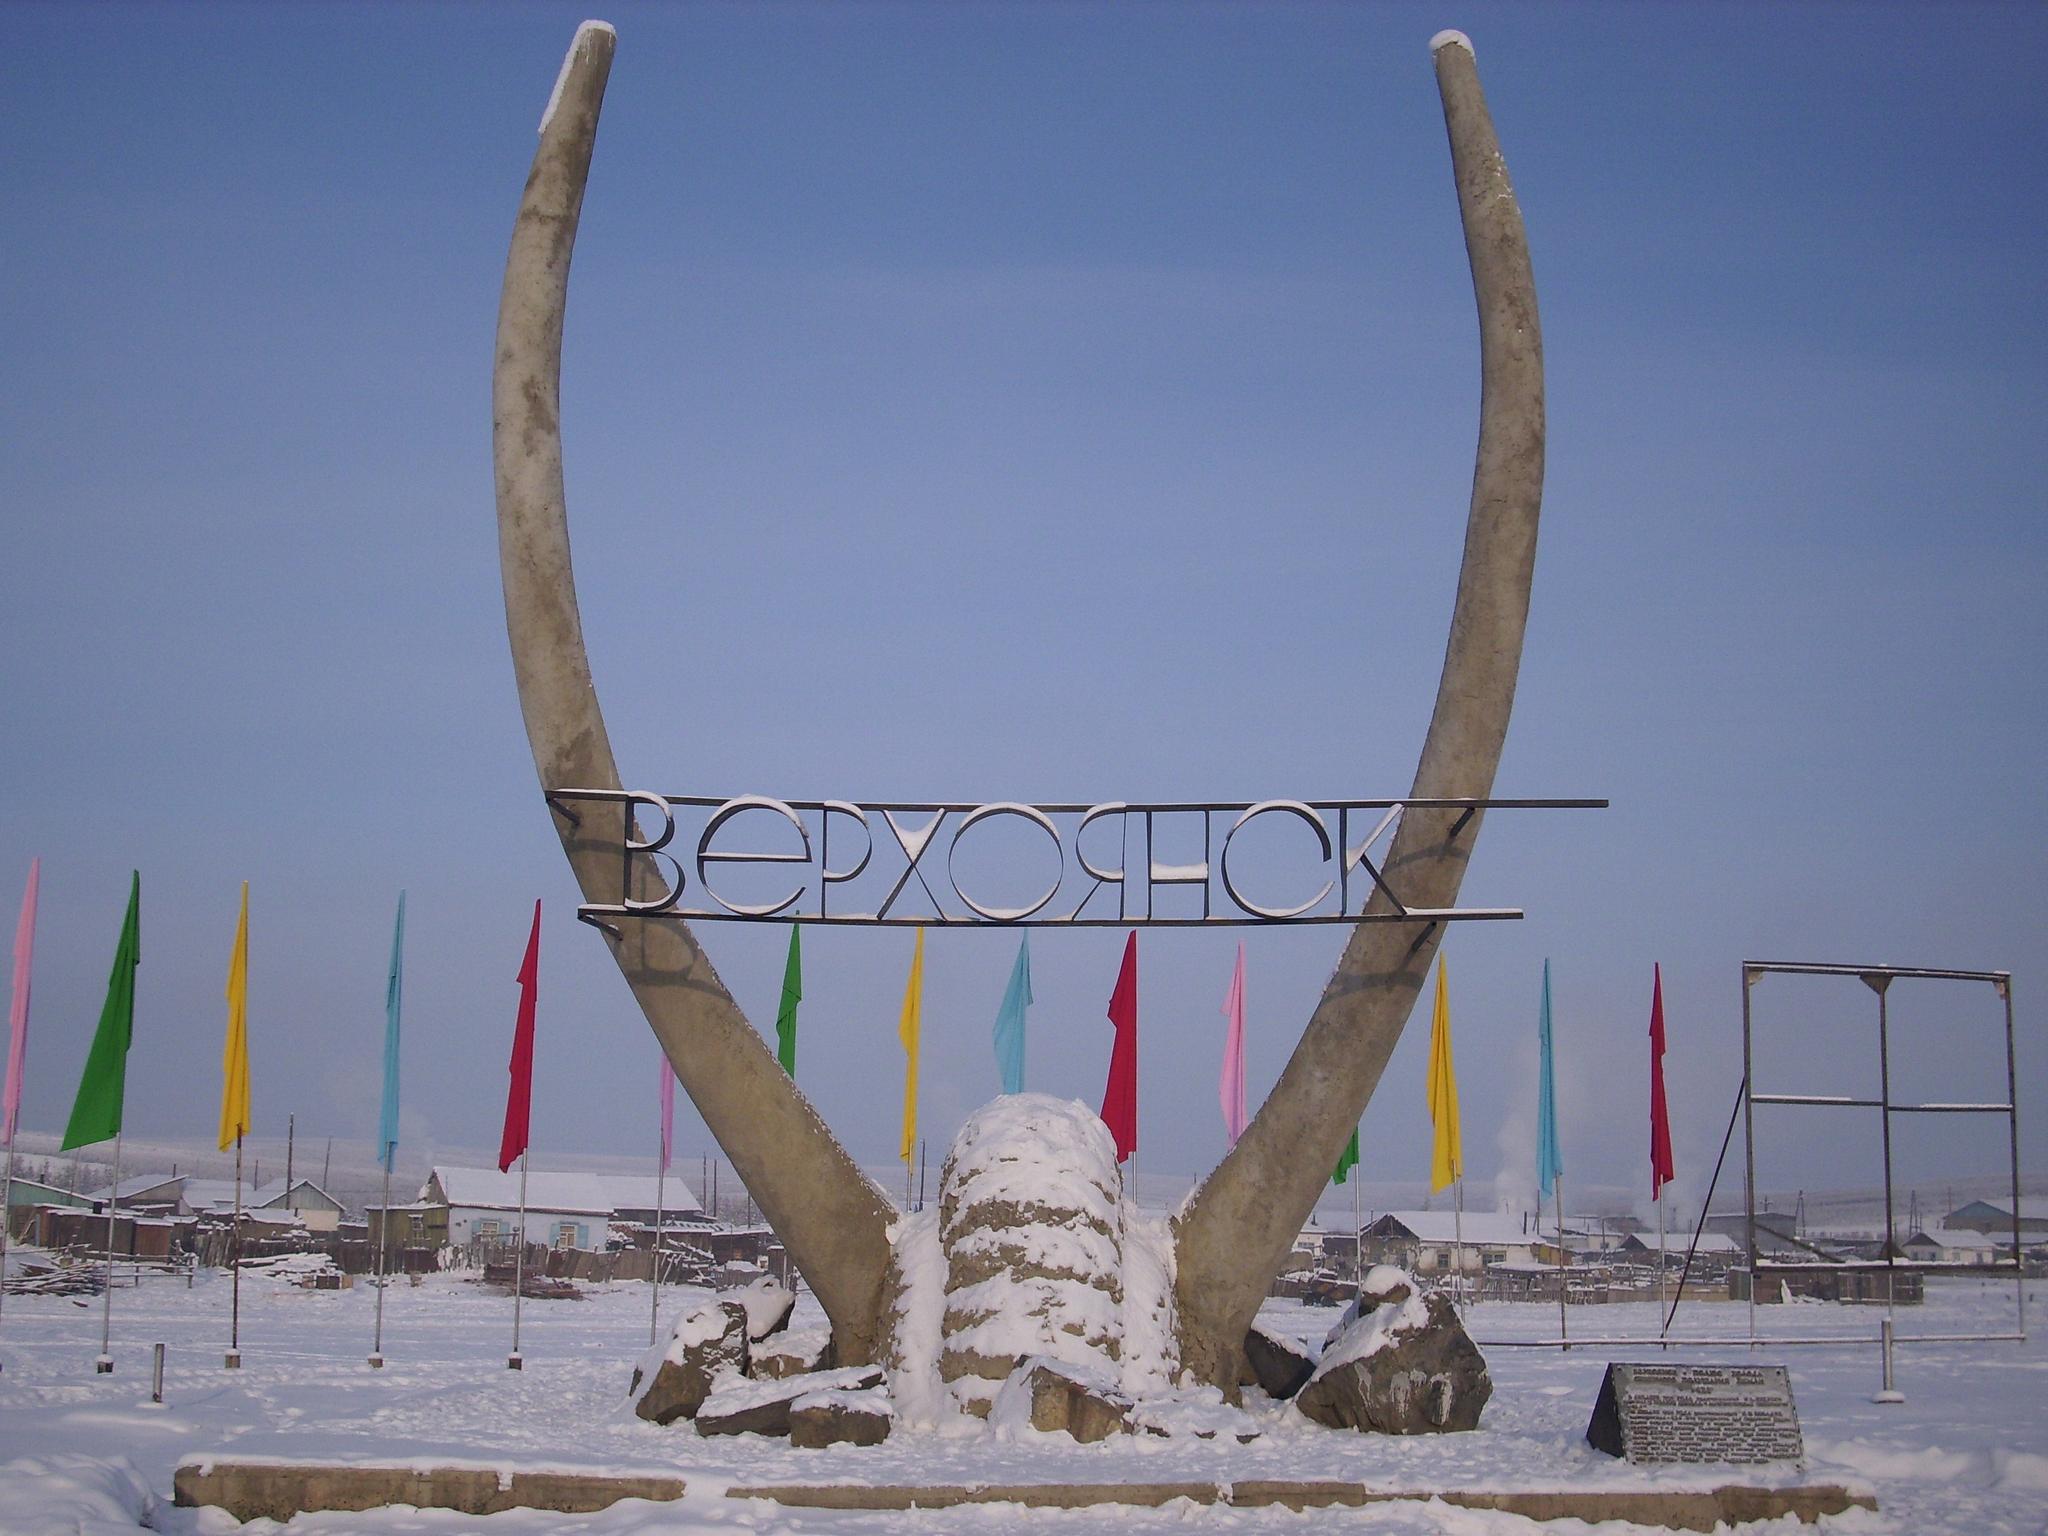 Verkhojansk er fra før rekorden ble bekreftet oppført i Guinness' rekordbok med verdens største temperaturspenn. 